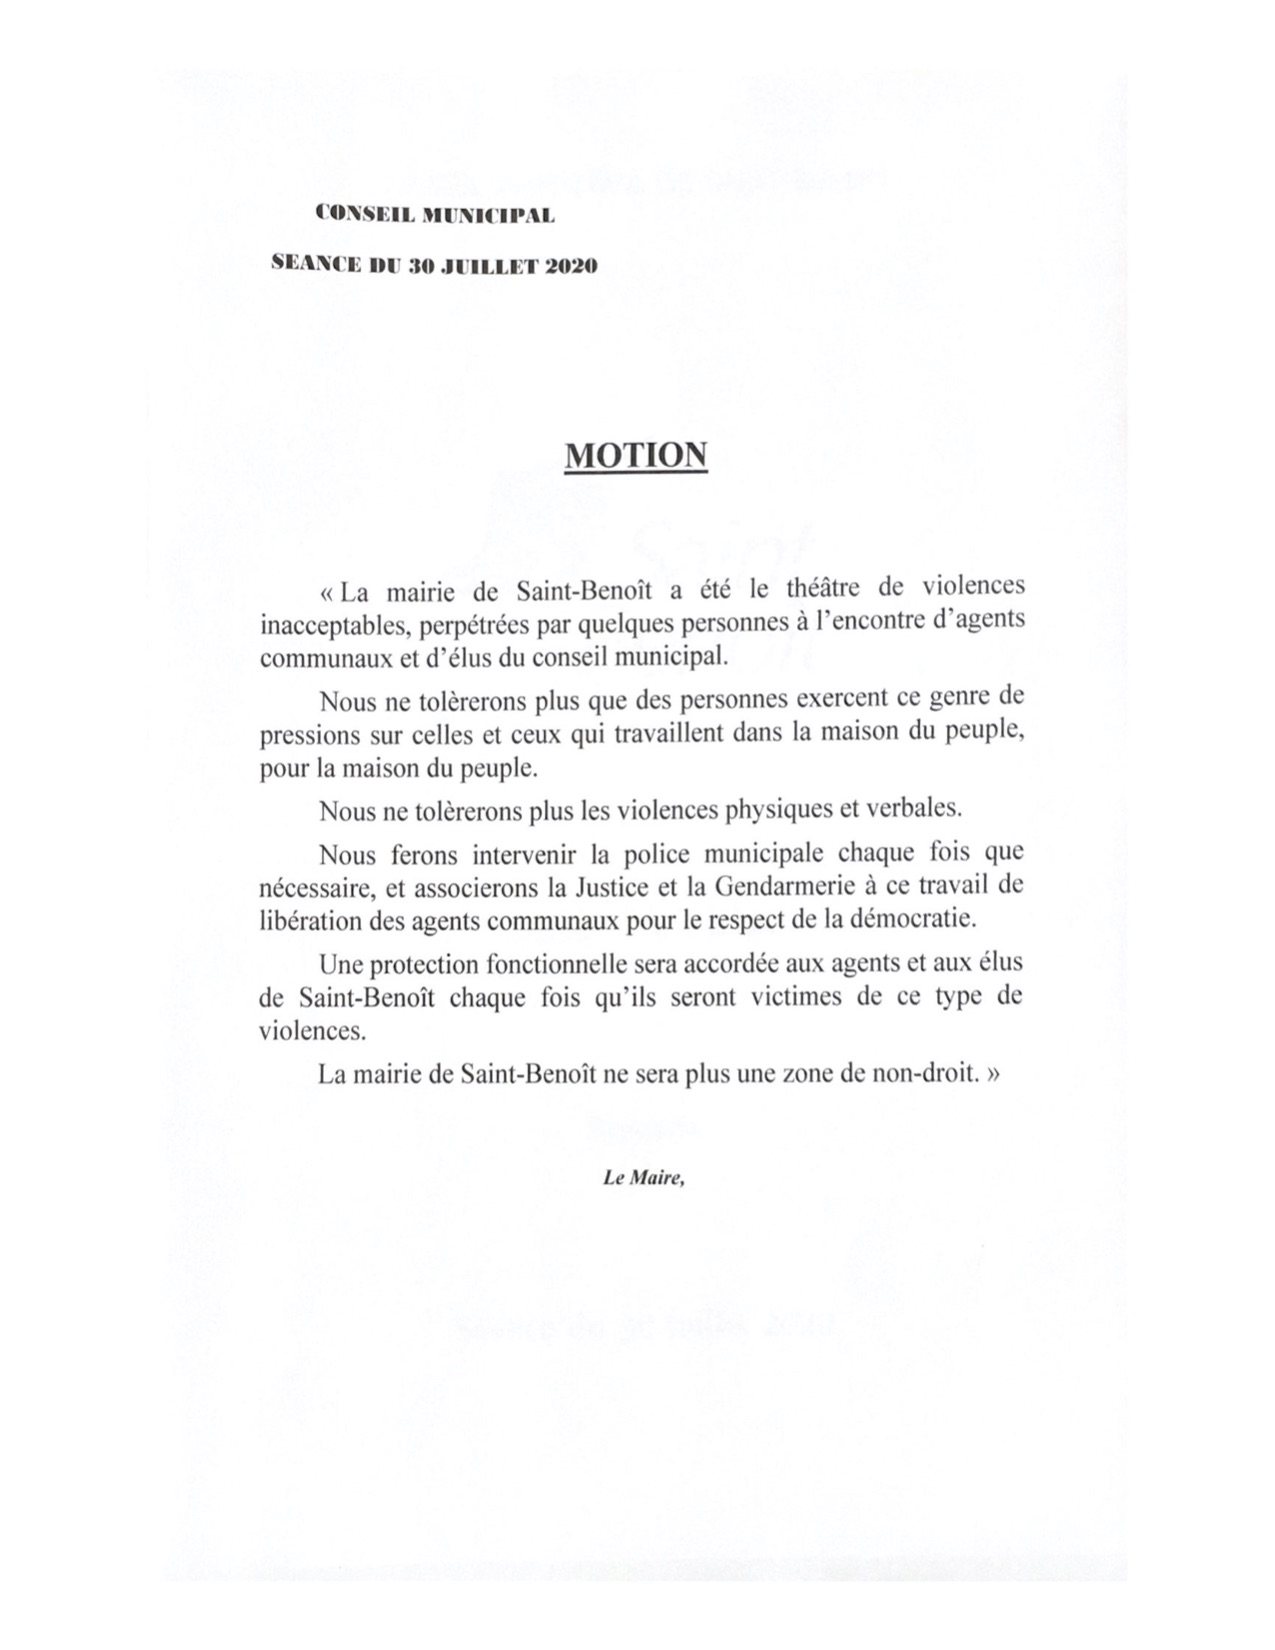 Après des menaces reçues par des agents et des adjoints: Une plainte déposée par la mairie de St-Benoît